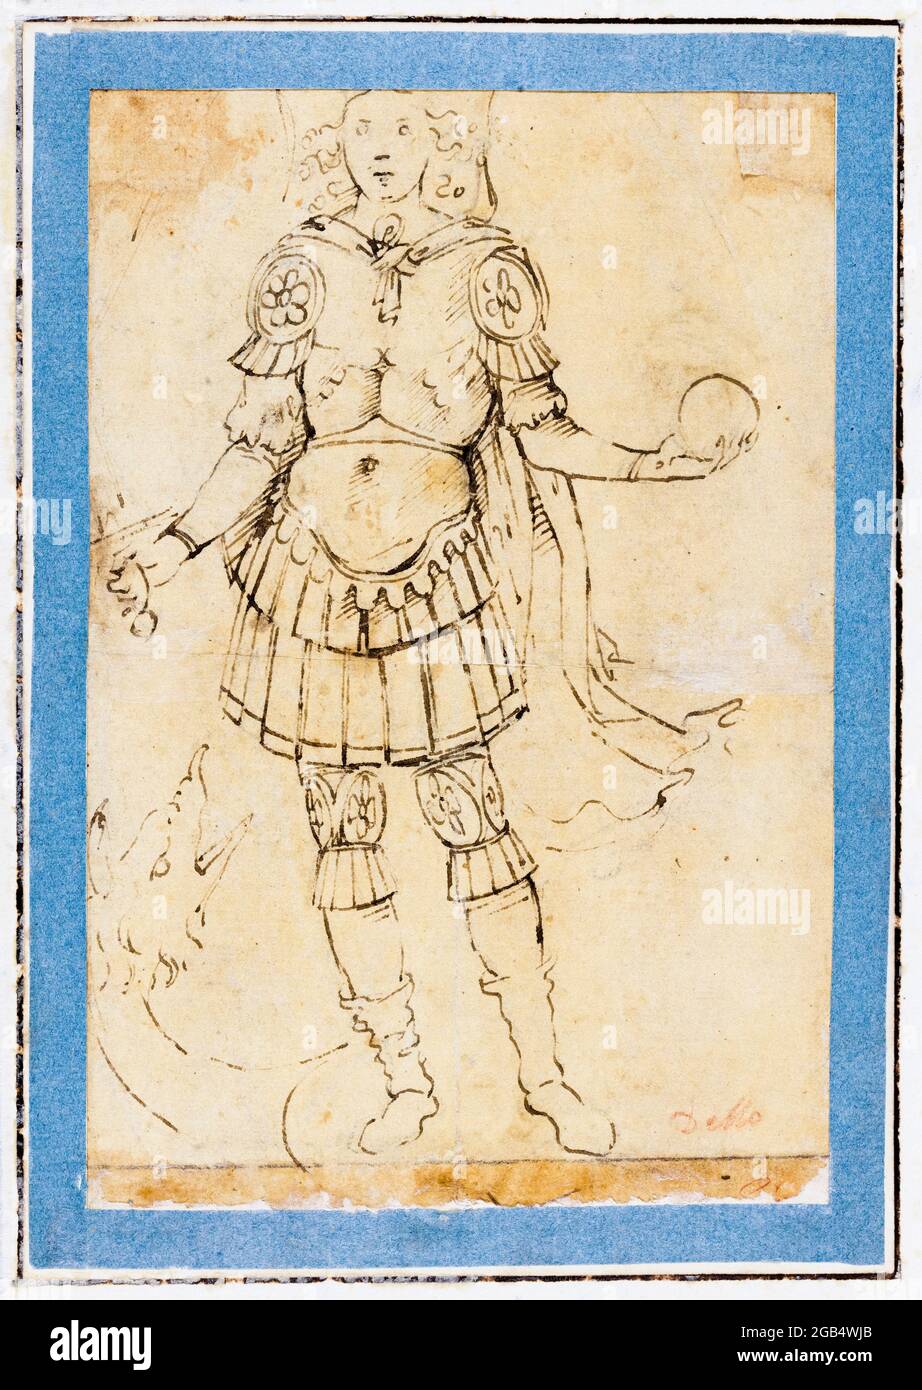 Giotto di Bondone, Untitled sketch, dibujo, antes de 1337 Foto de stock